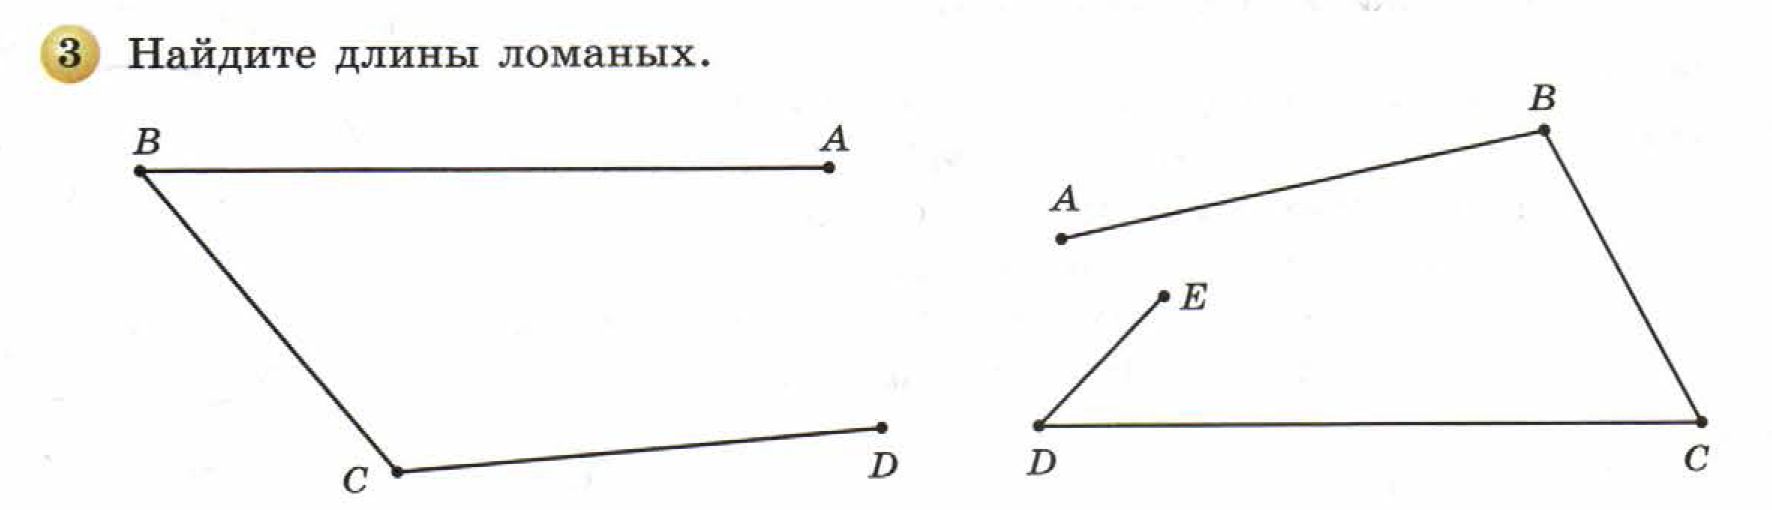 решебник по математике Бунимович 5 класс условие итоги главы 1 задание 3